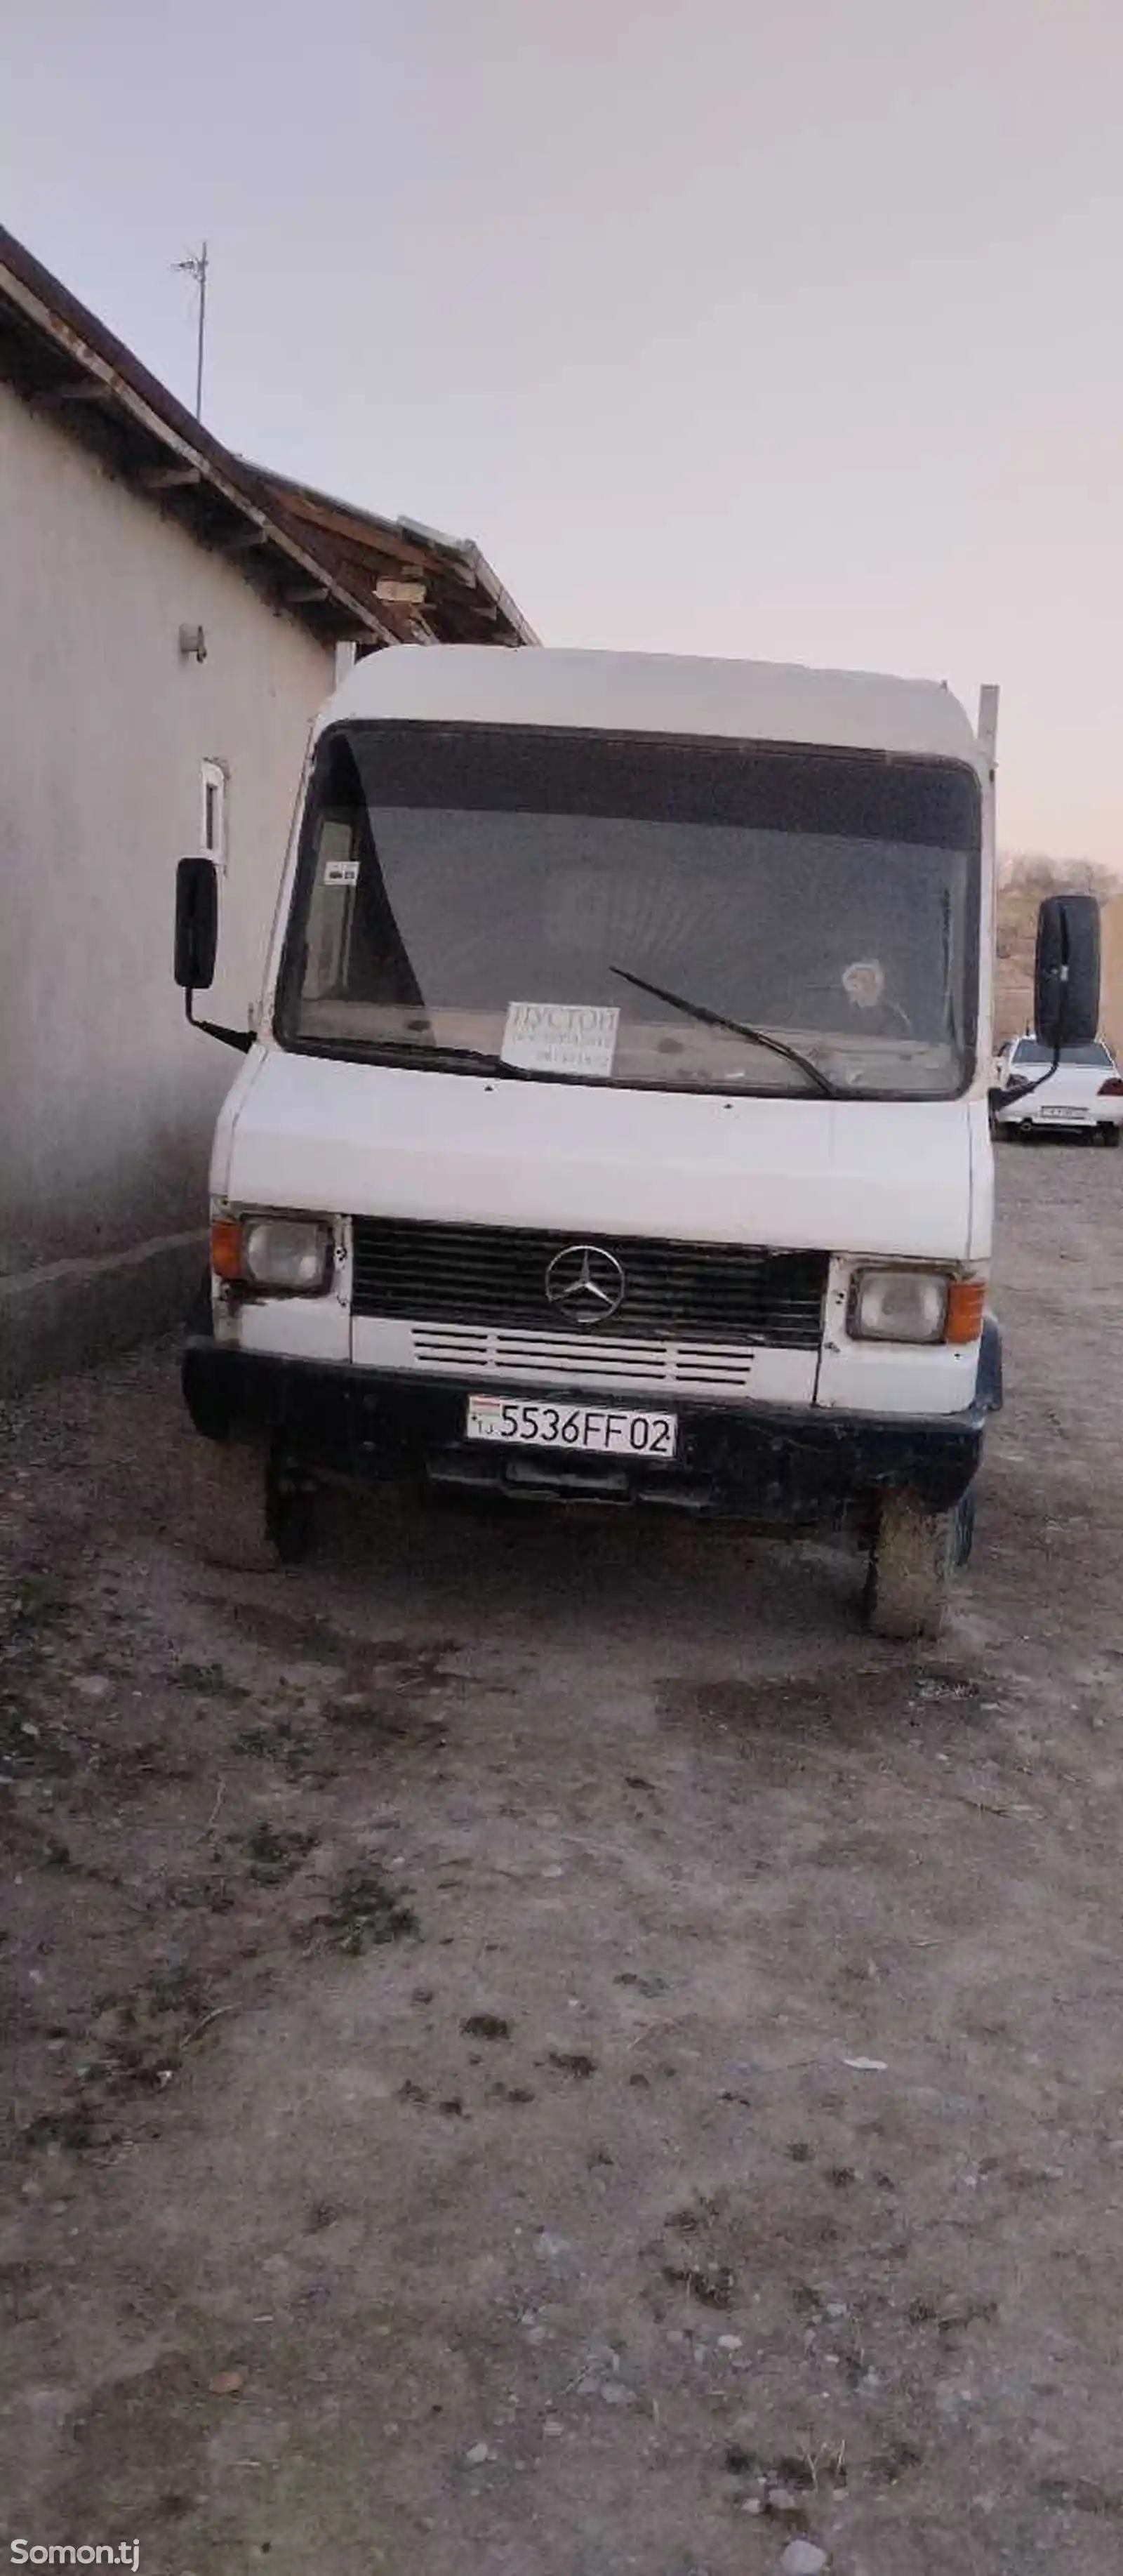 Бортовой грузовик Mercedes-Benz, 1991-1